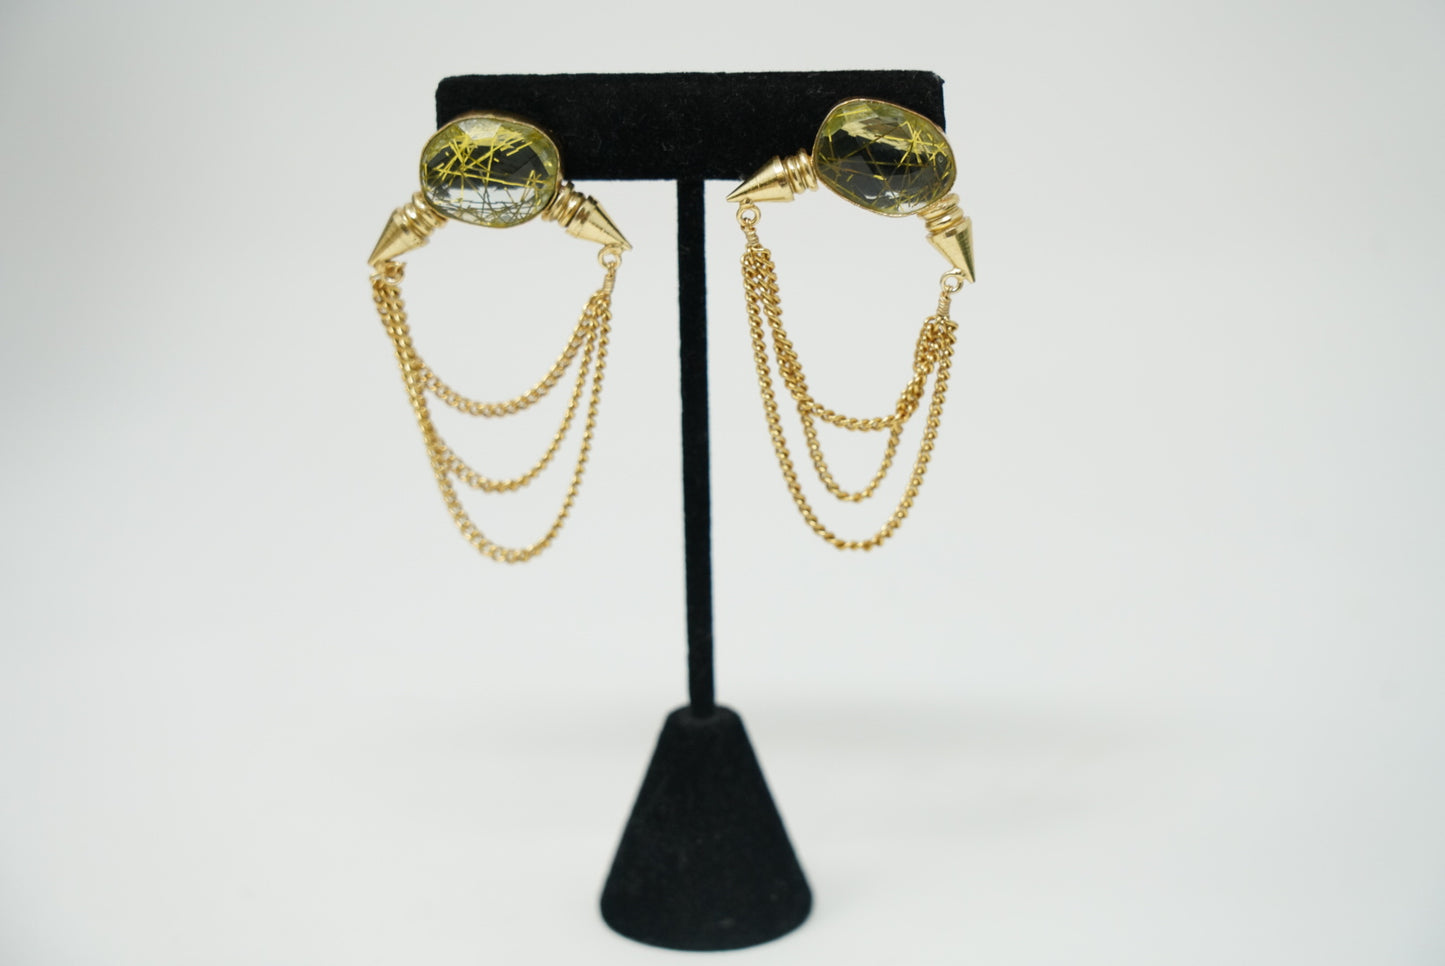 Golden Stone Studded Dangler Earrings